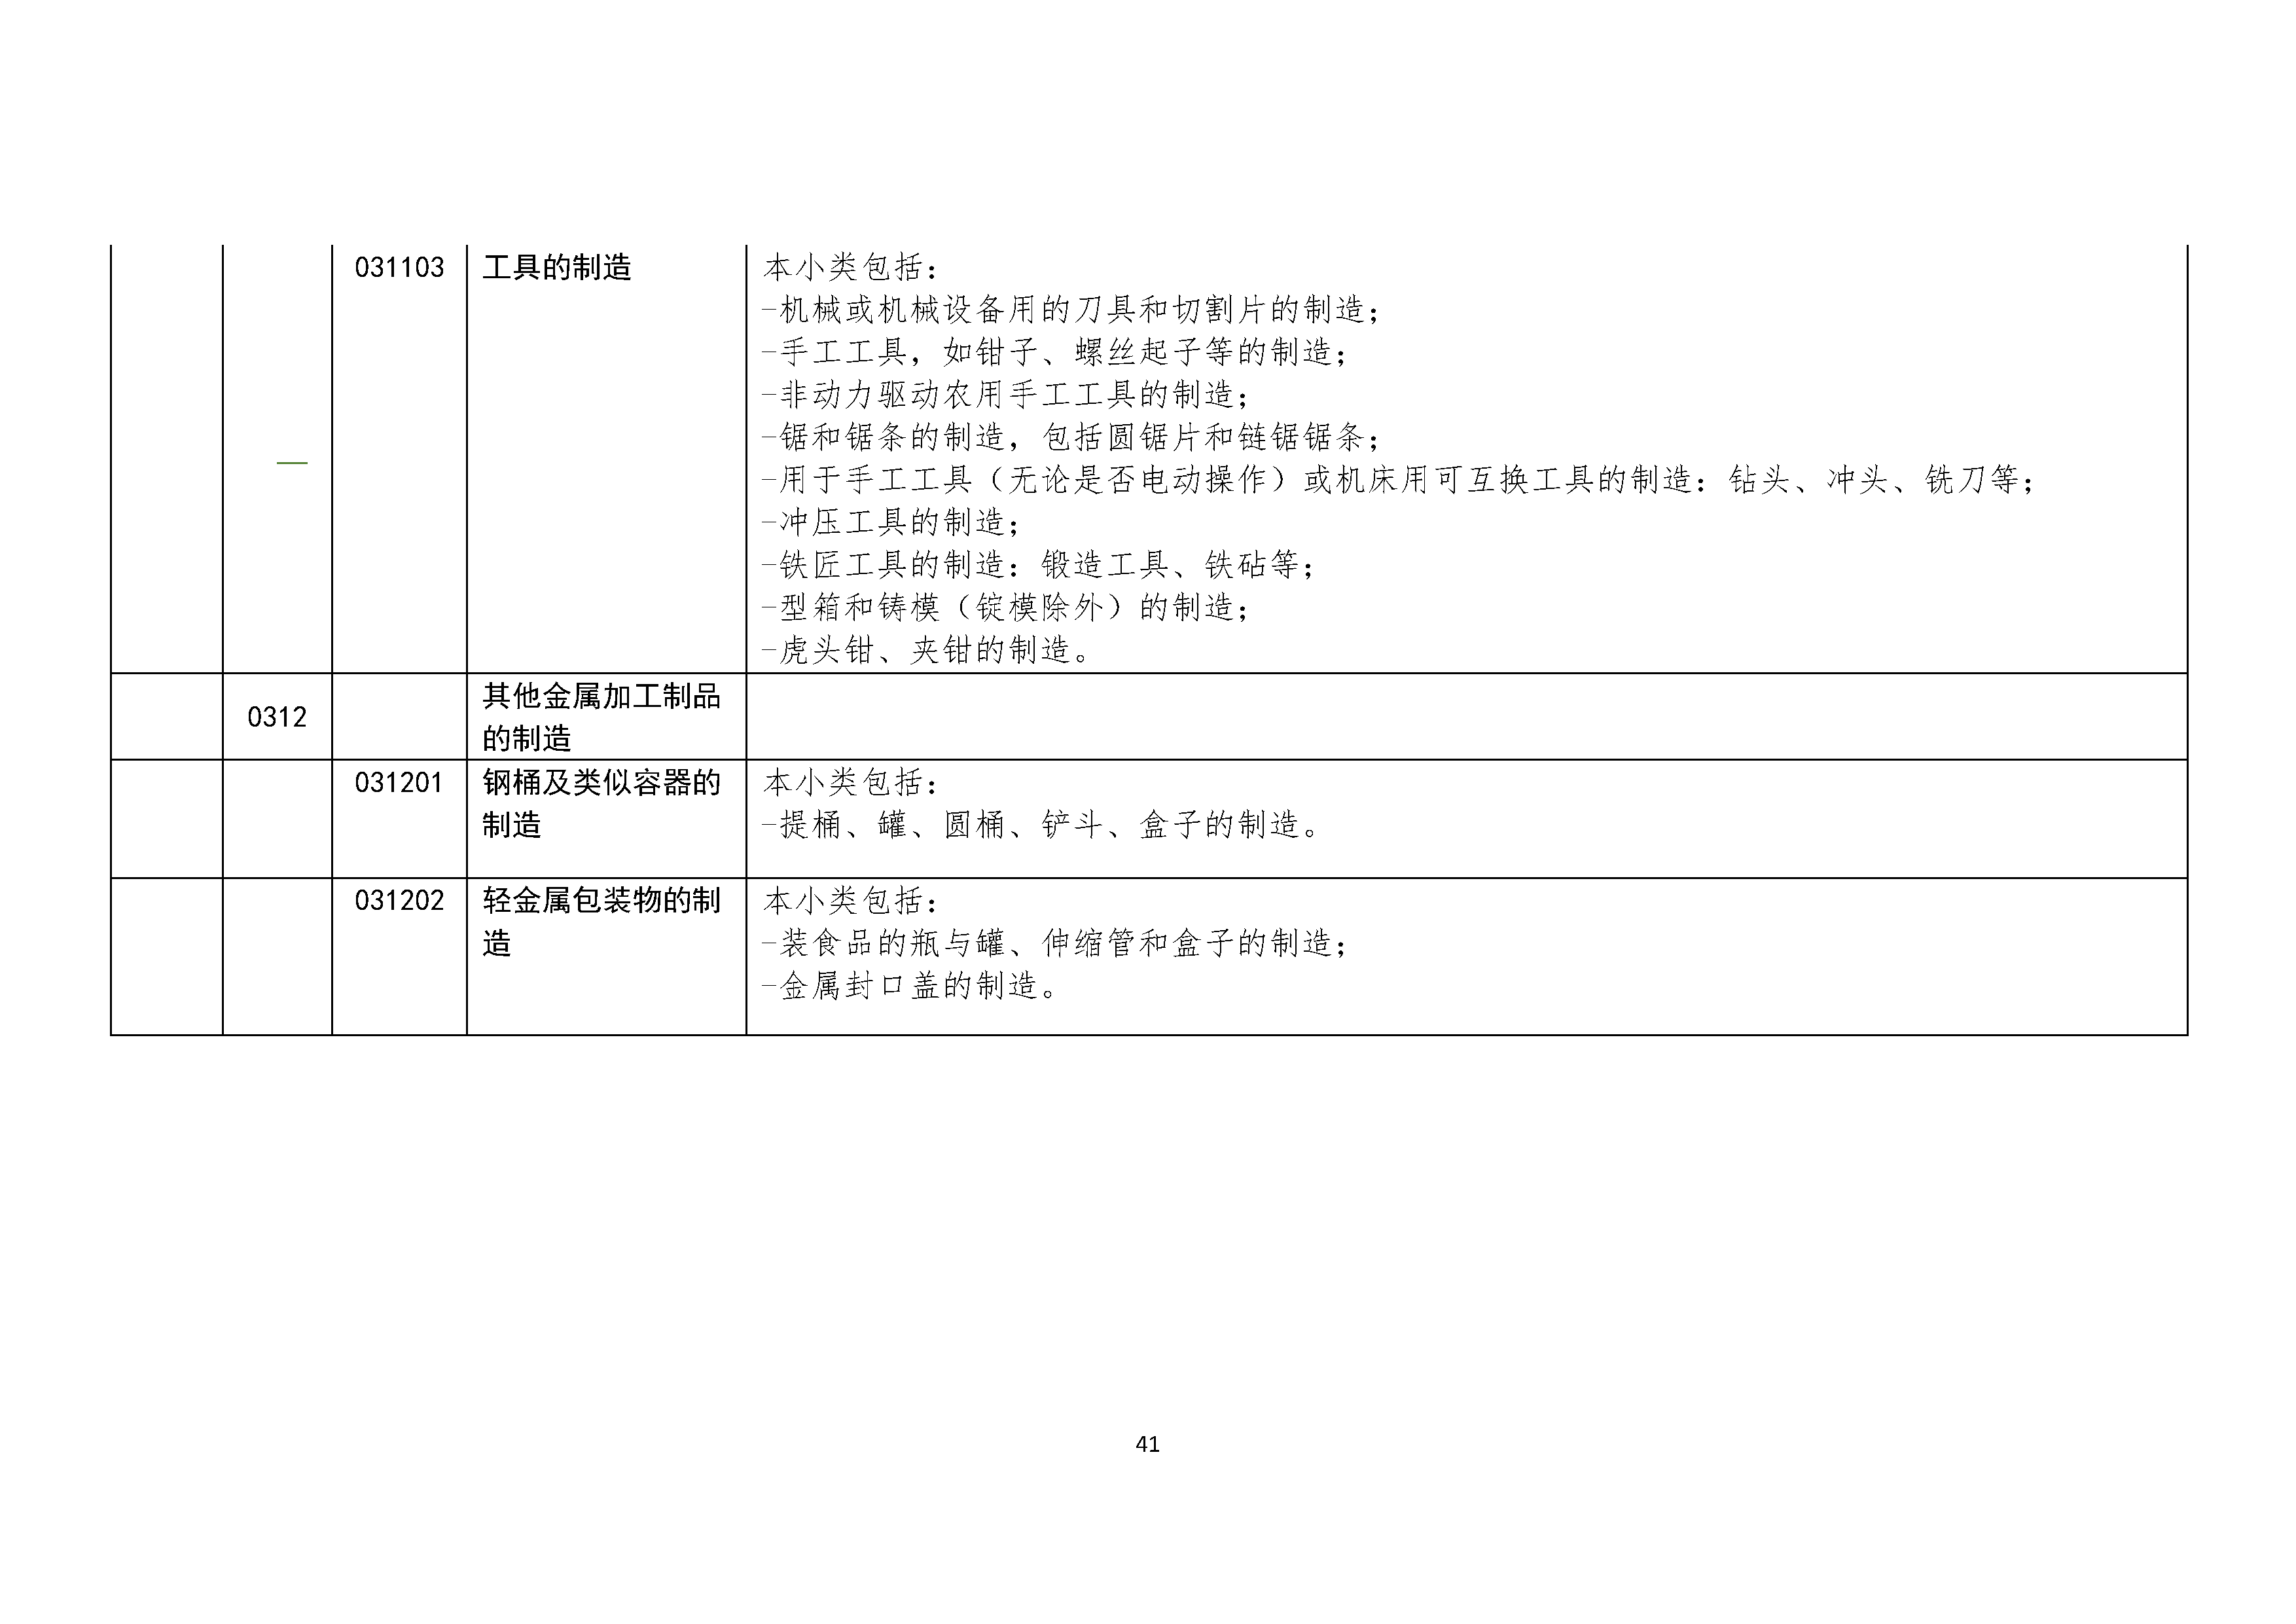 B.6《中国核能行业协会供应商评价供应商分类及产品专业范围划分规定》_页面_042.png